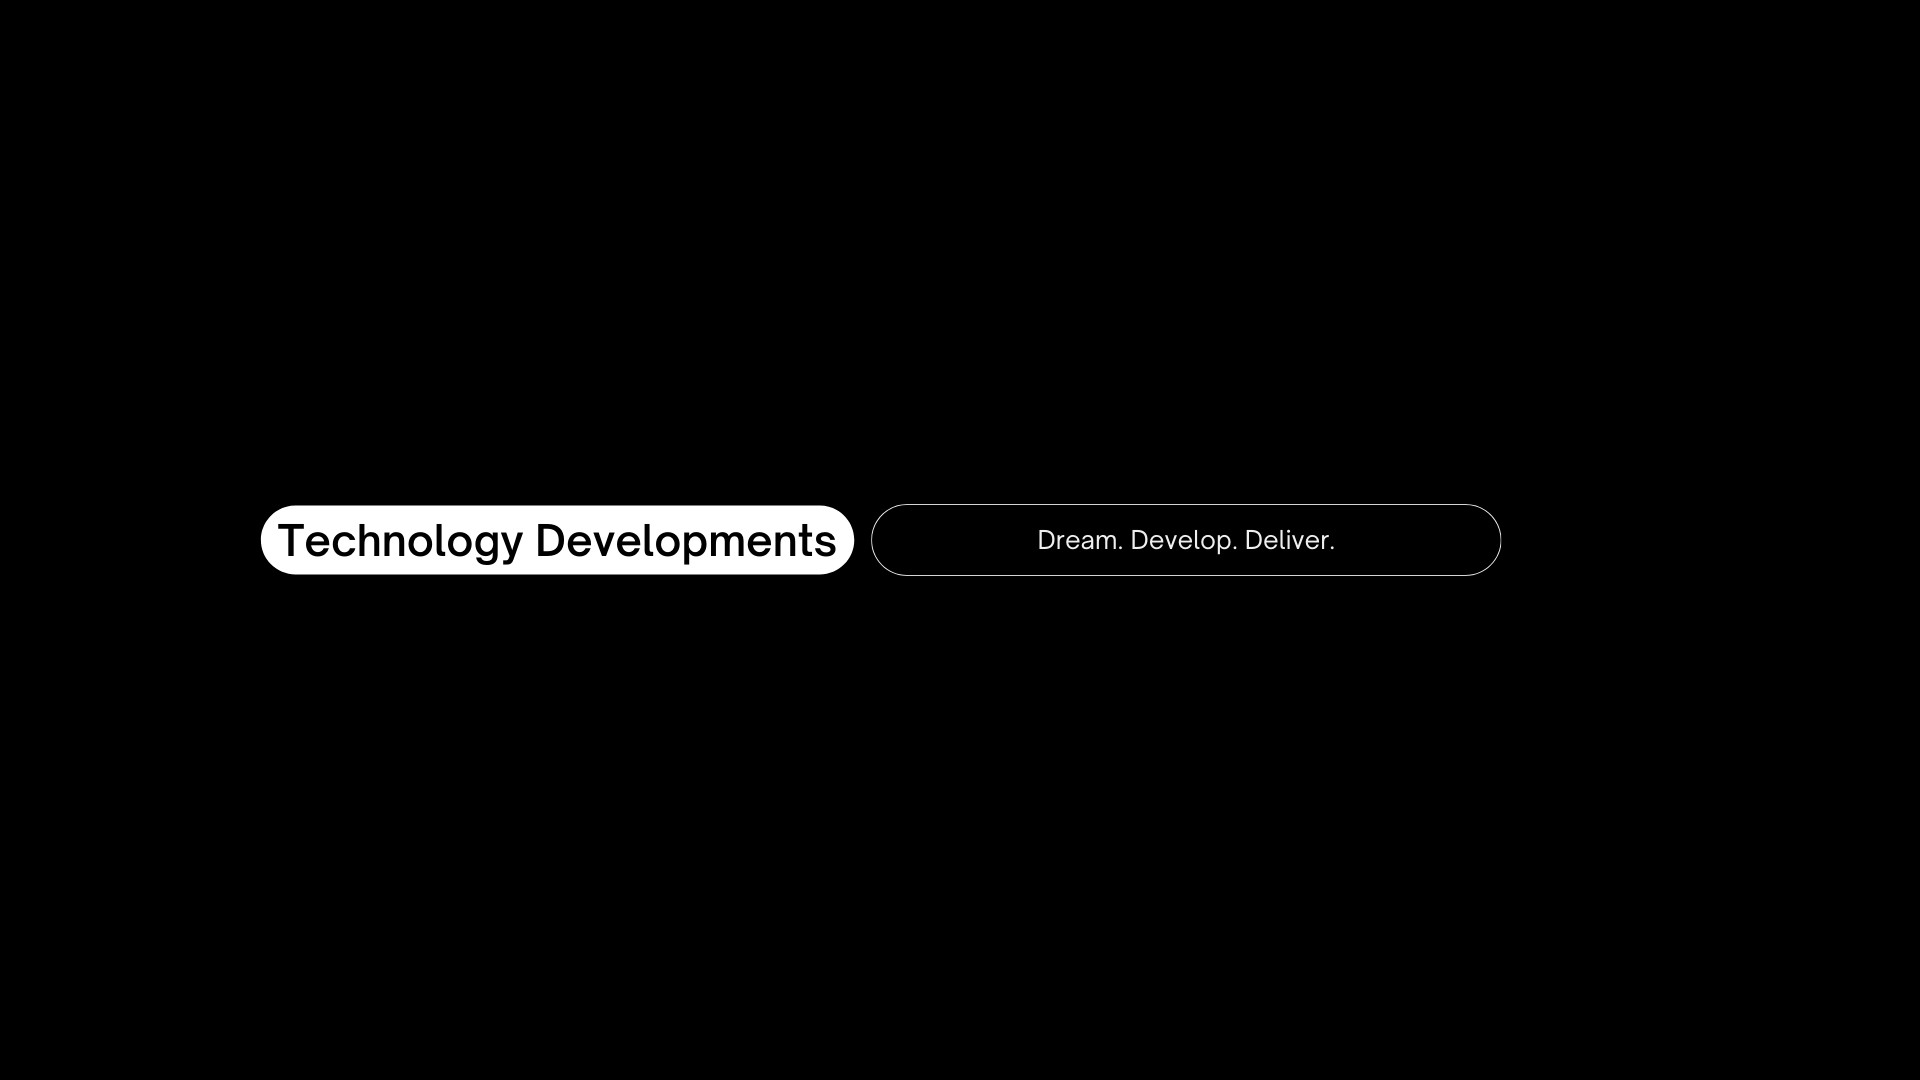 Technology Developments banner